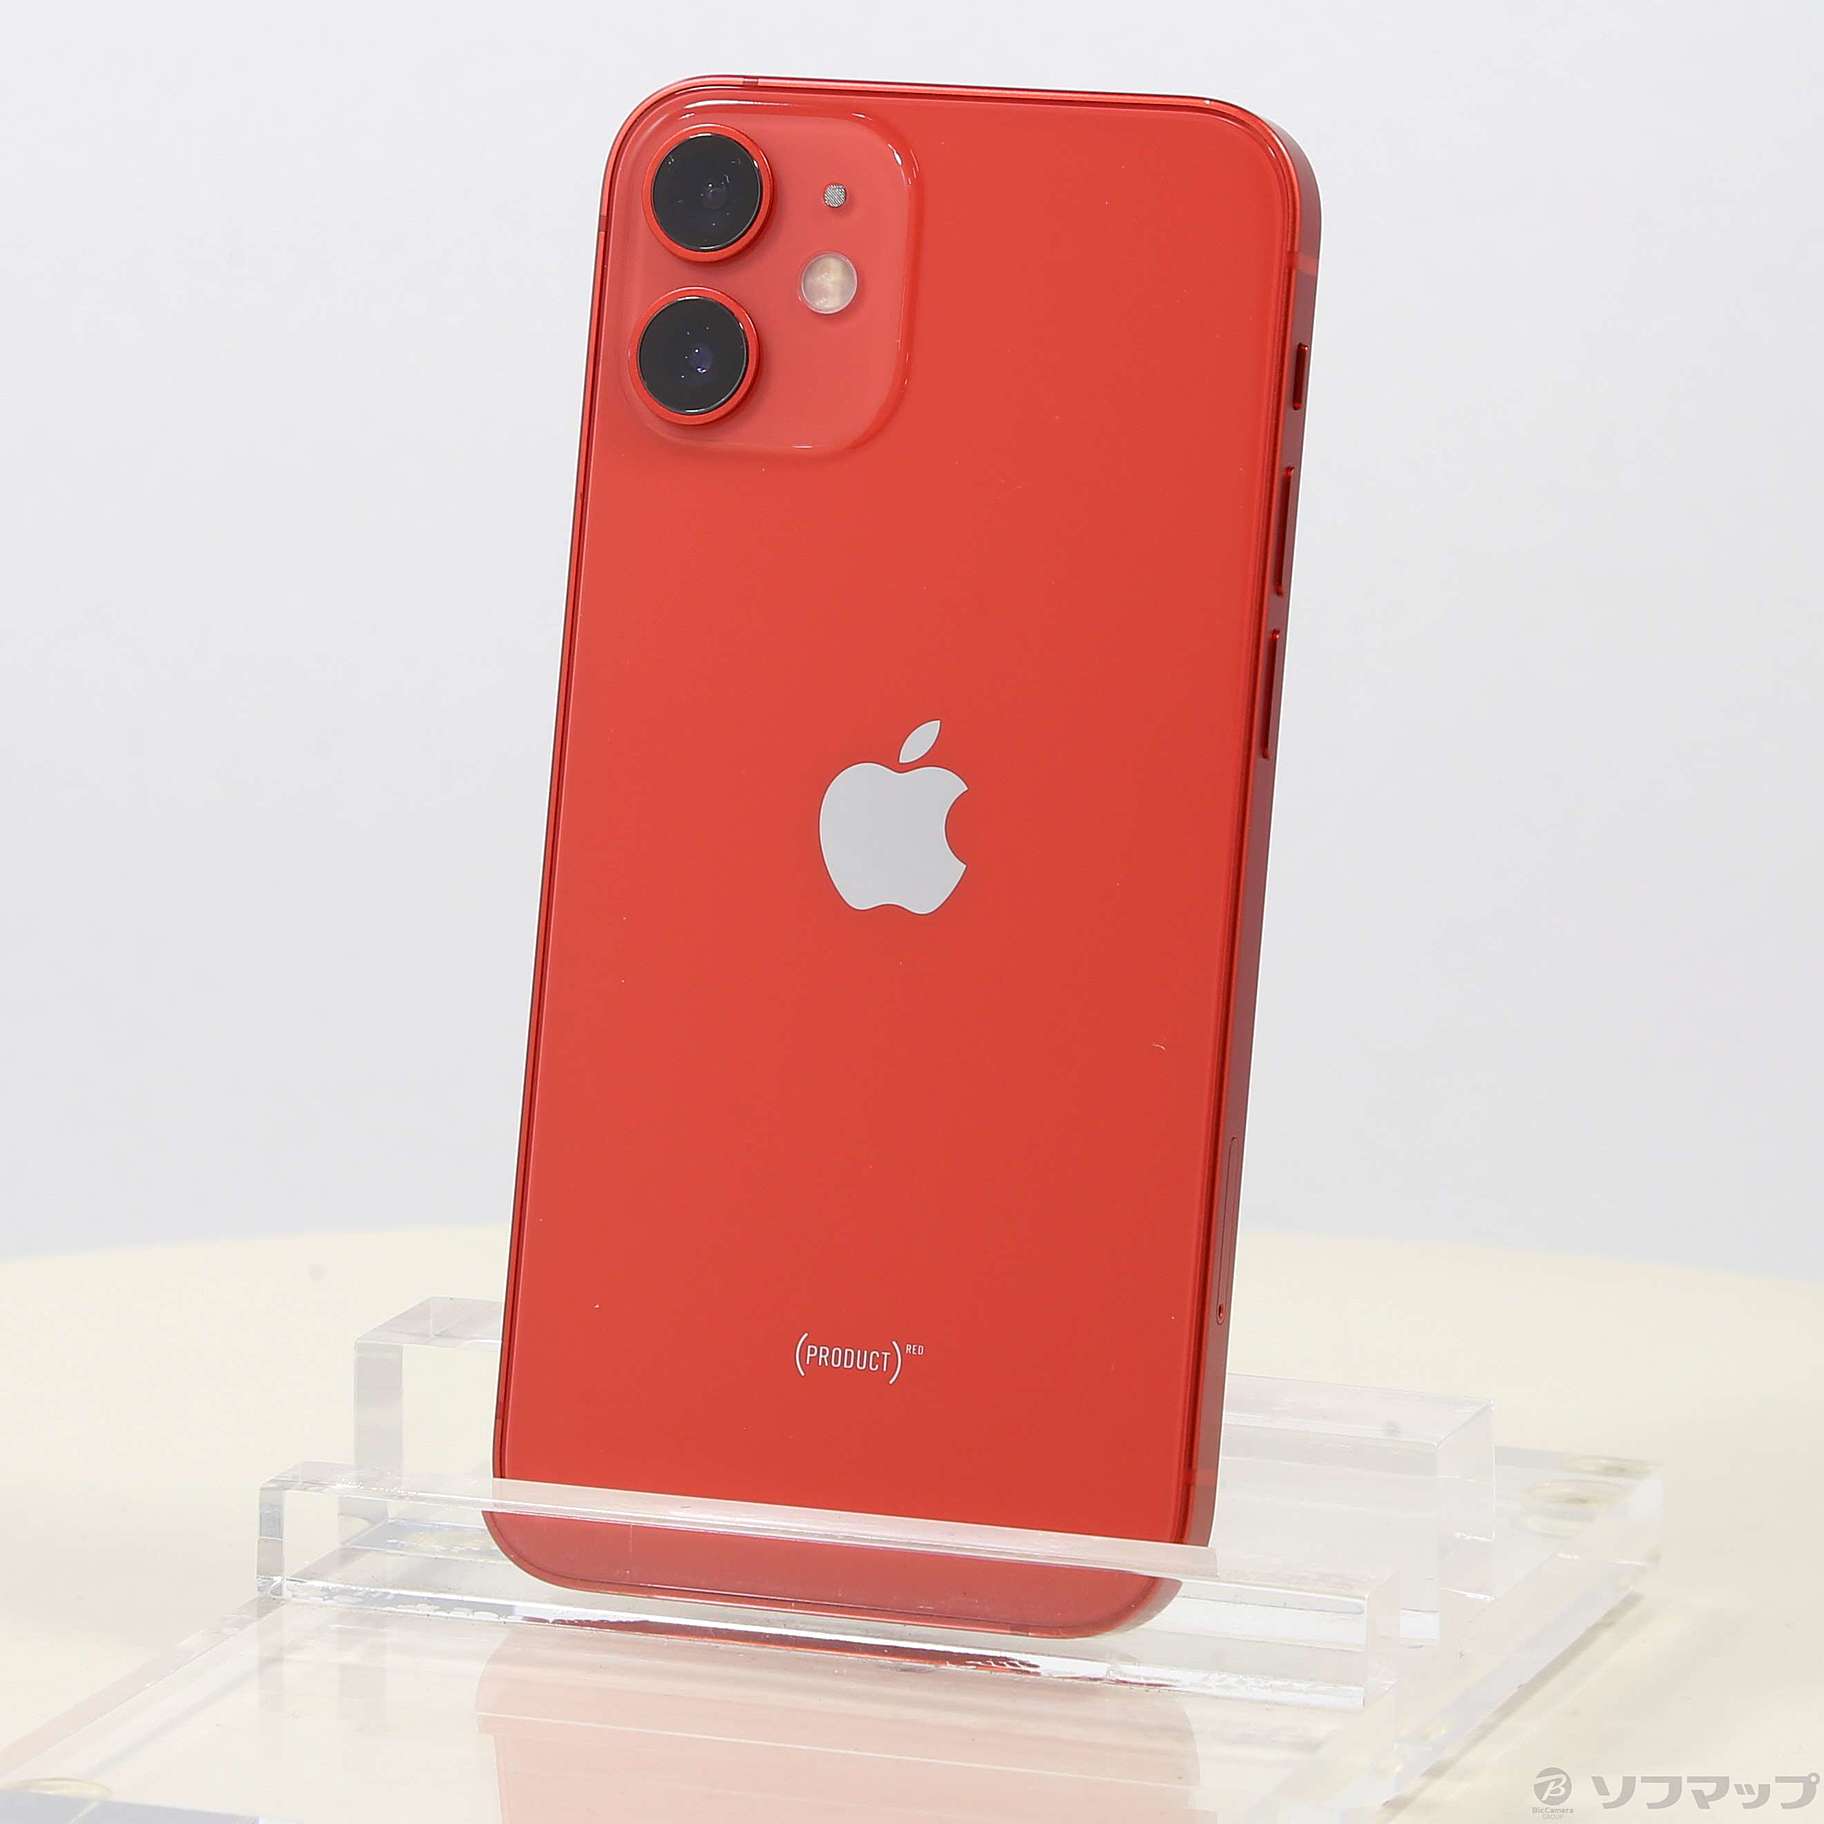 【新品未使用】iPhone 12 mini 64GB レッド